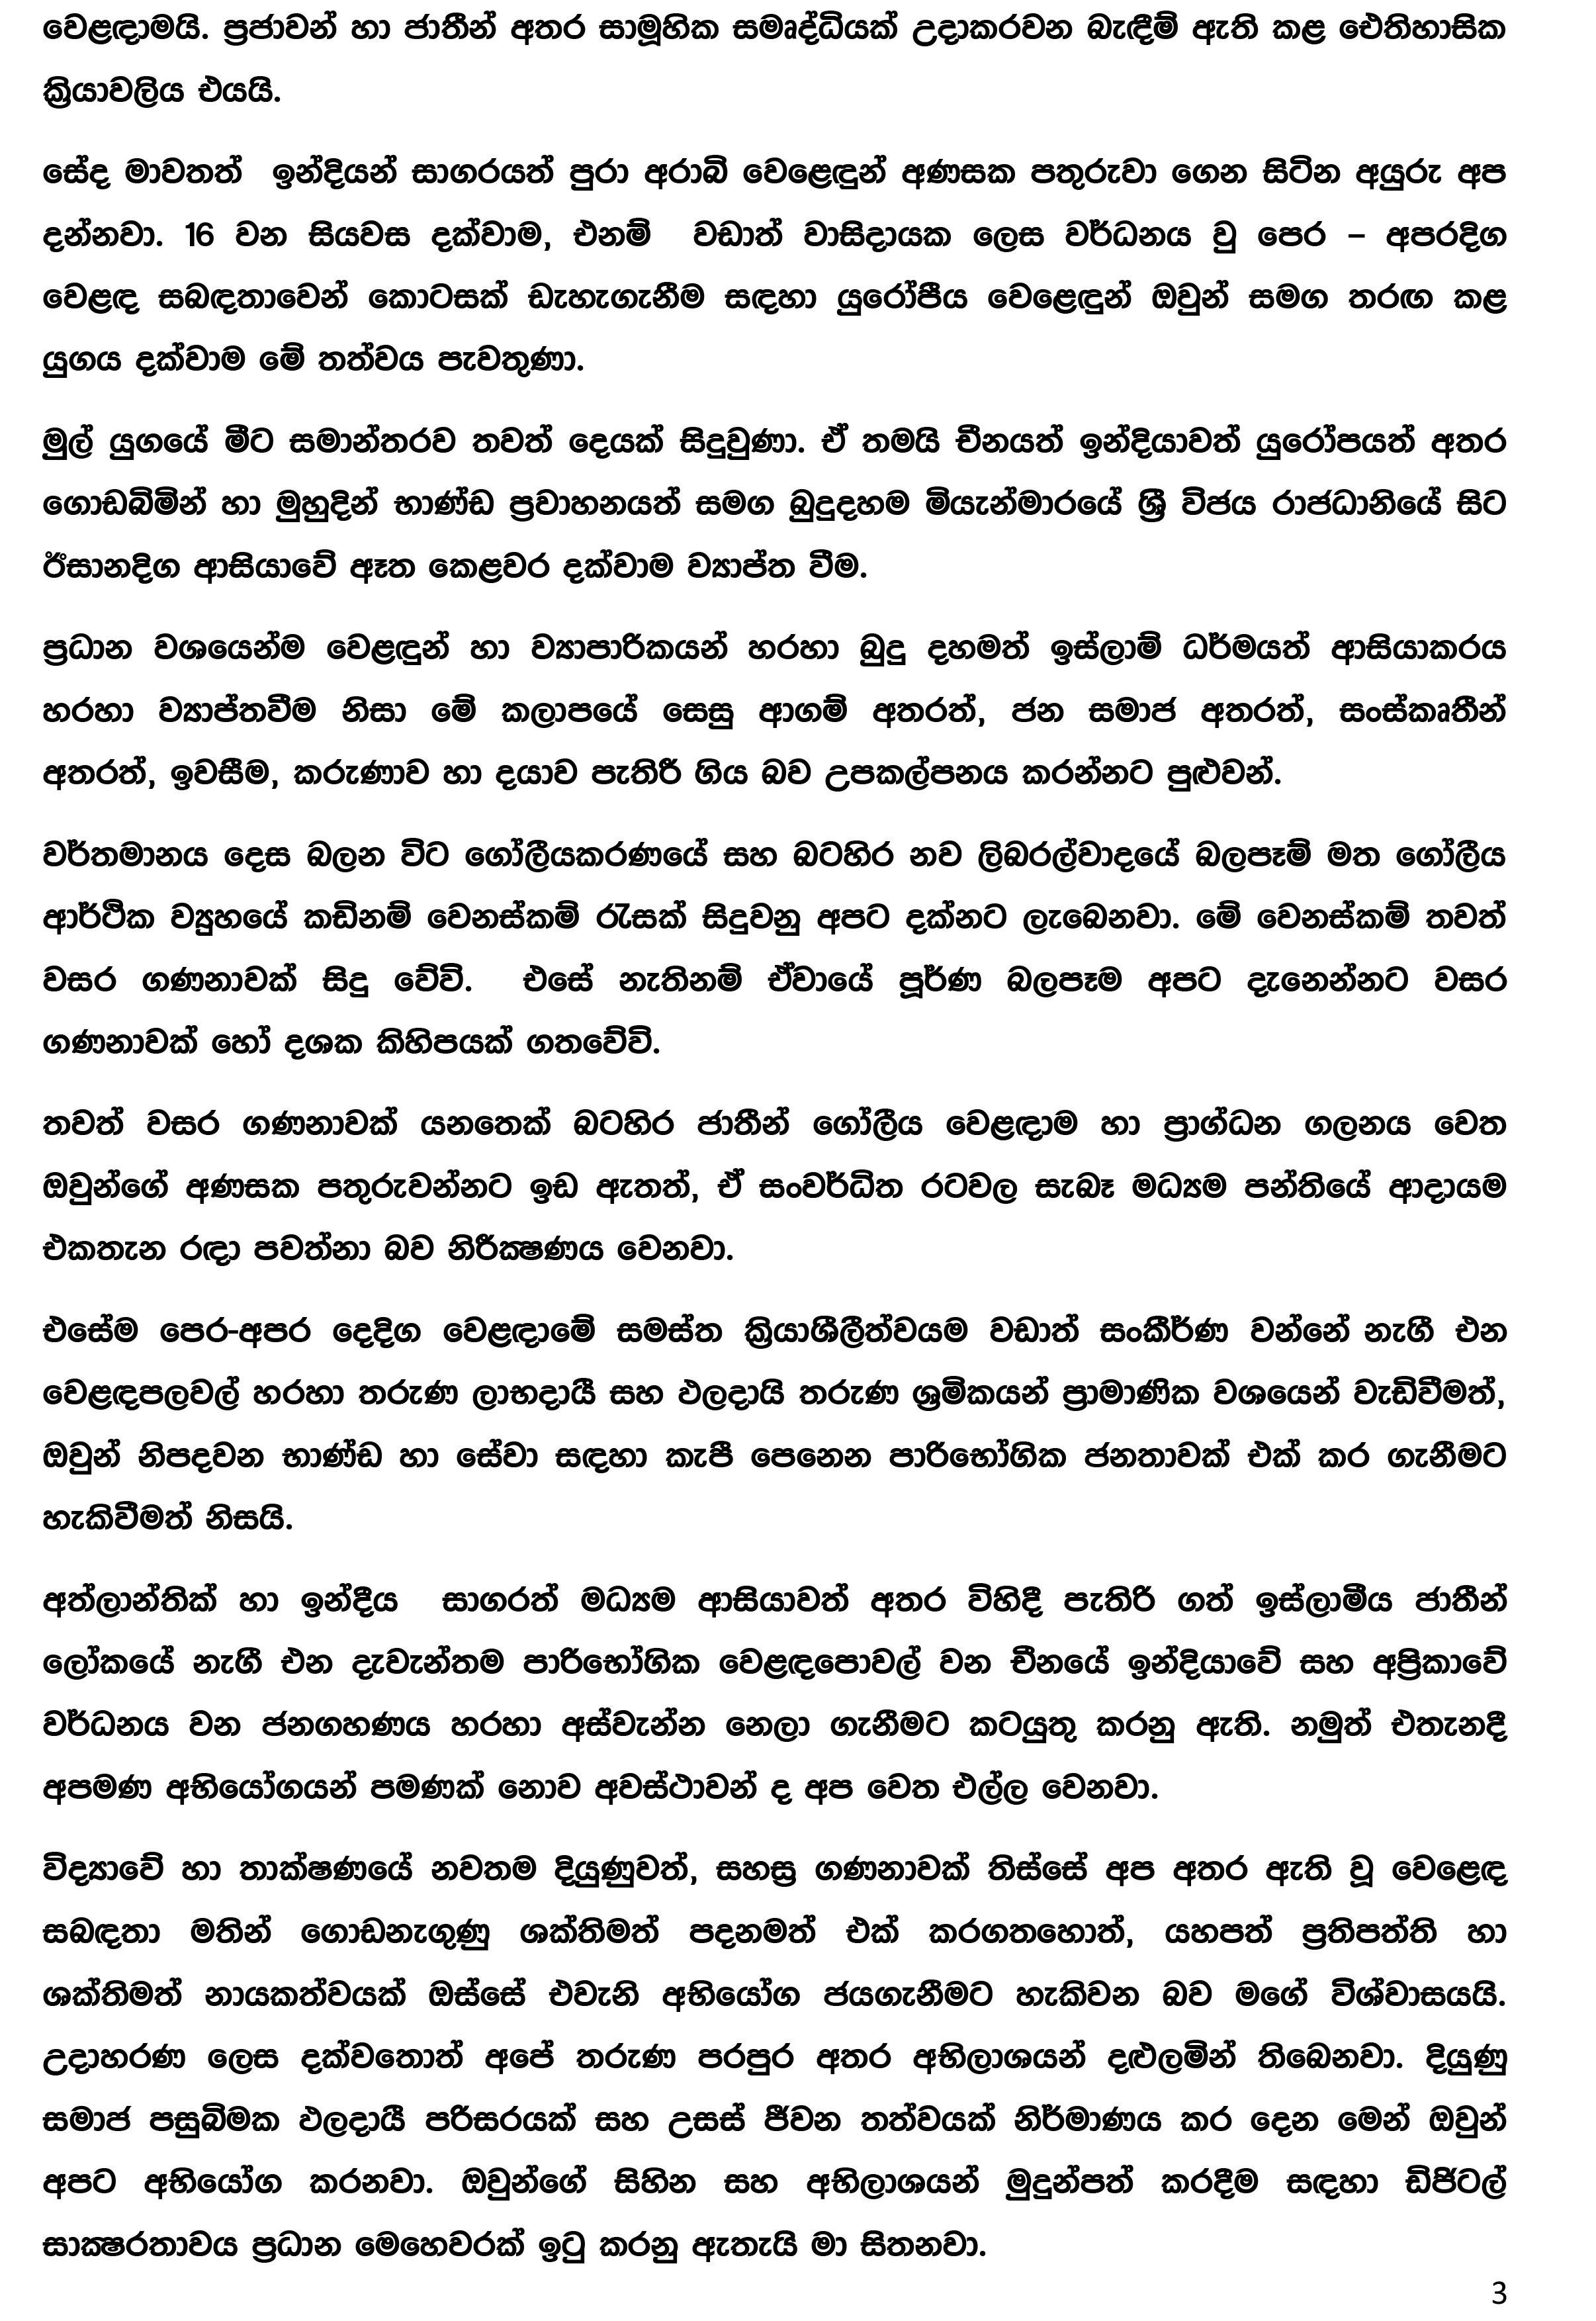 Press Release (1) - August 02_2016 (Sinhala)-3